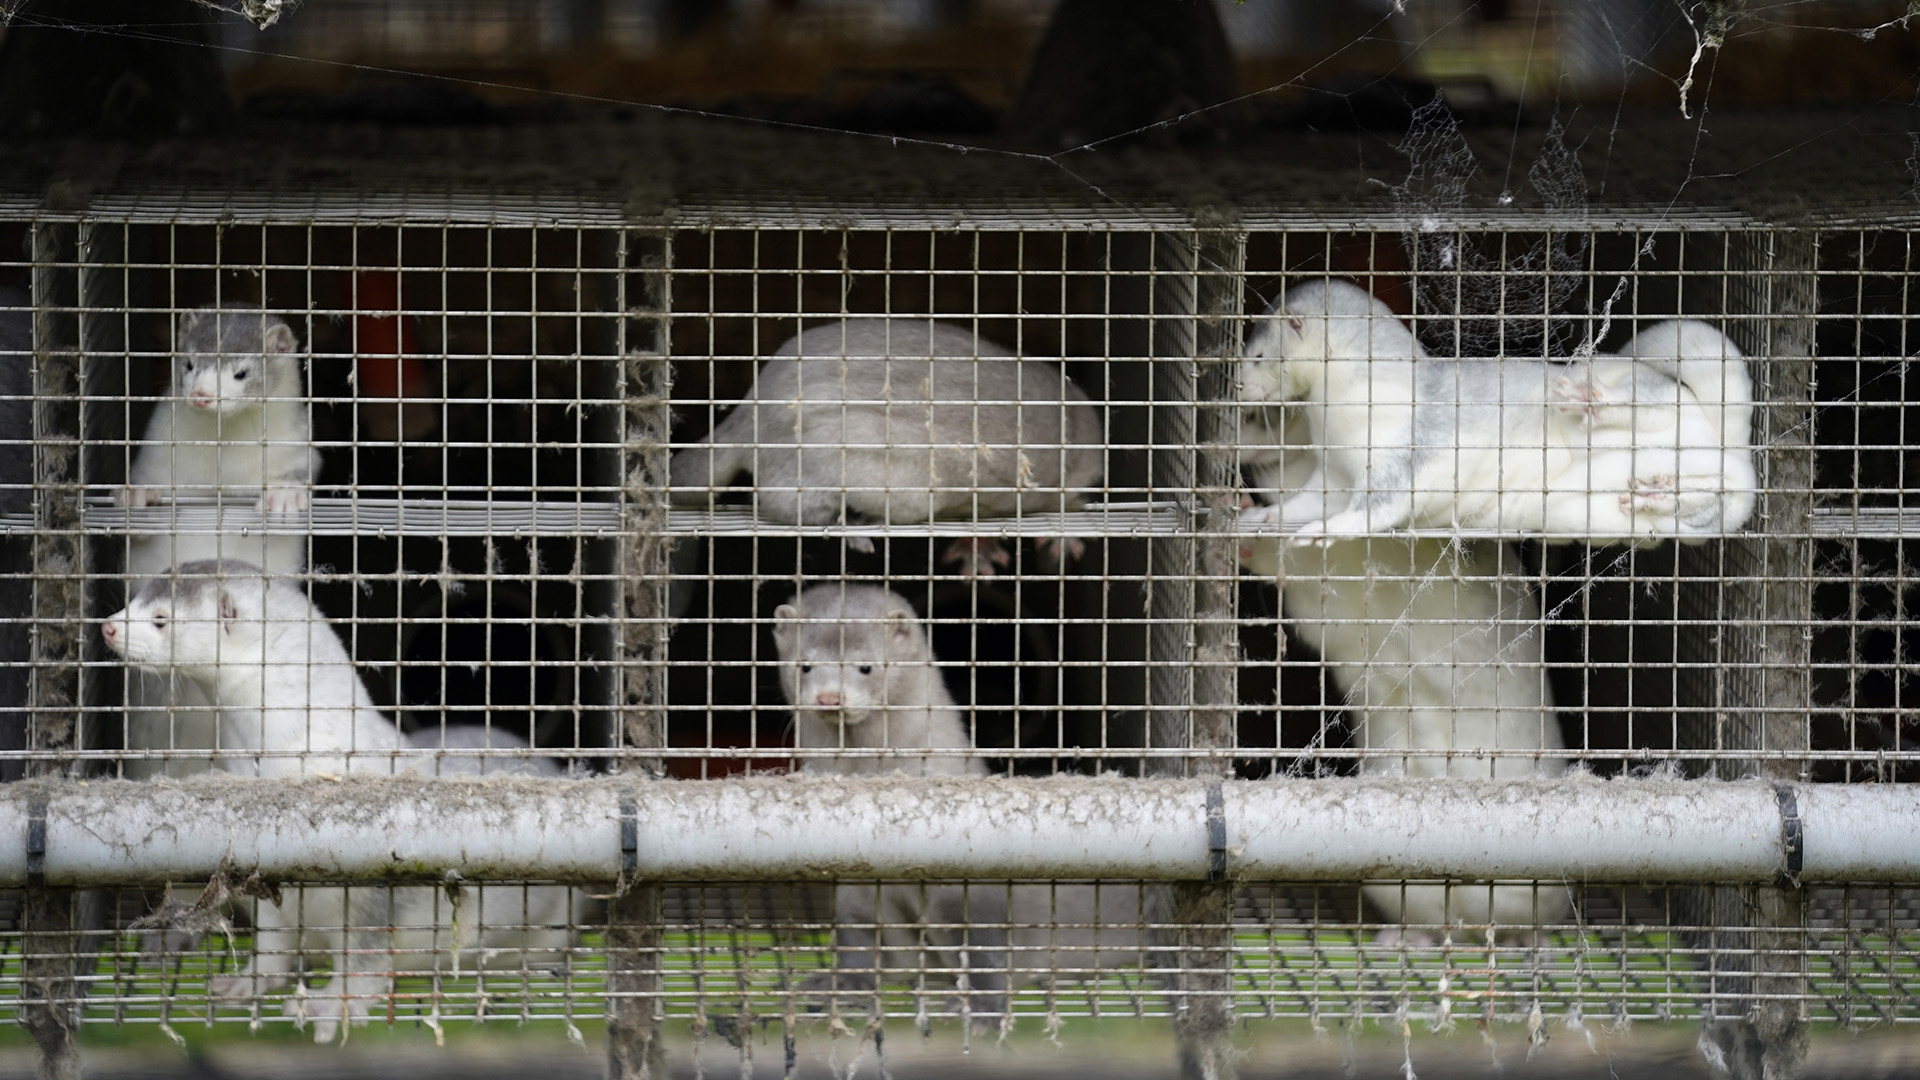 Nerze stehen ihren Käfigen in einem Bauernhof in Gjoel in Nordjütland. | dpa